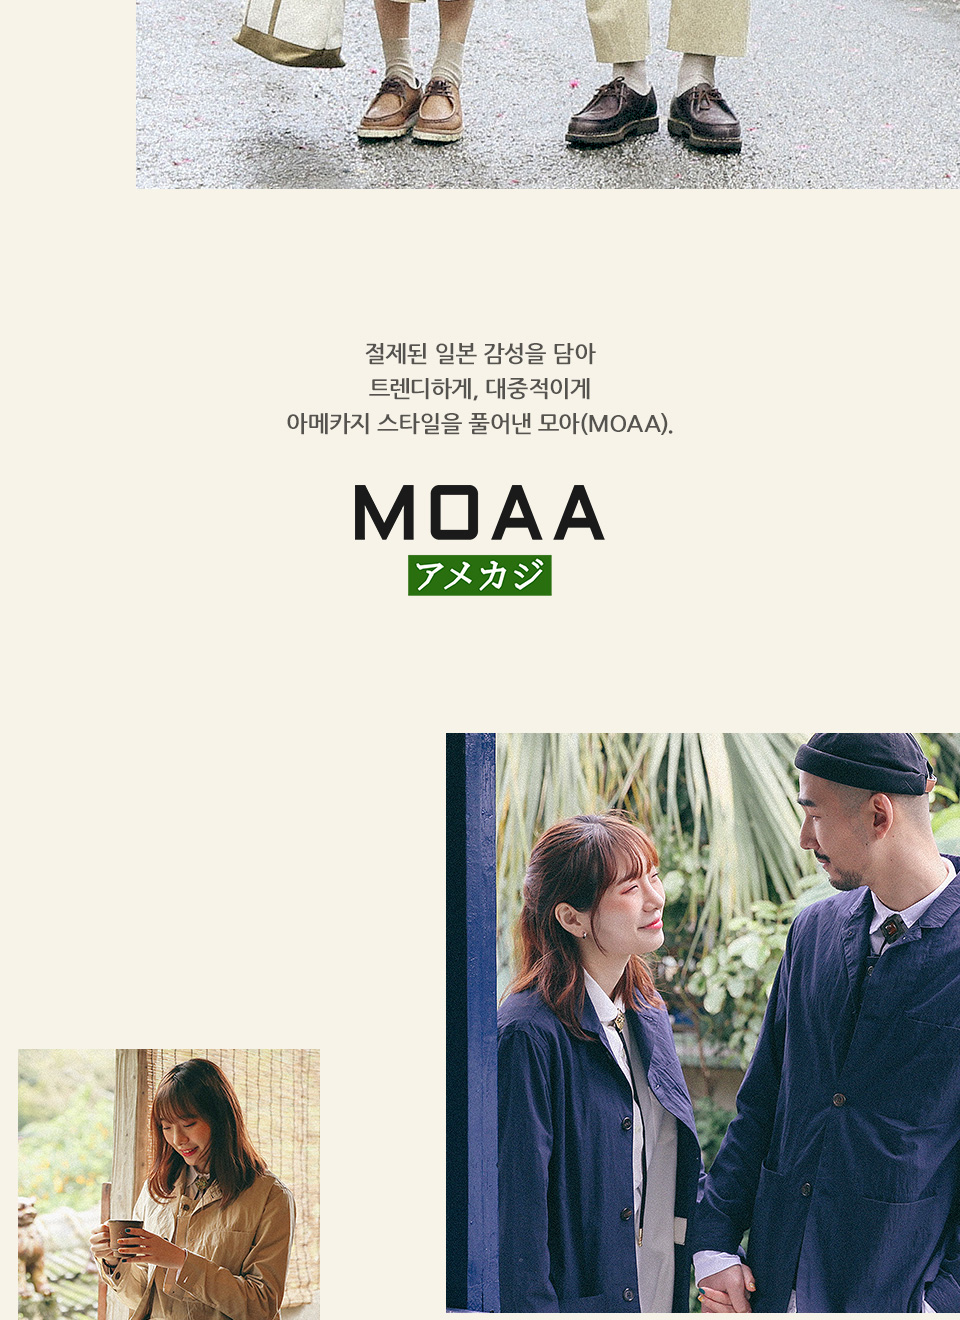 MOAA는 아메카지 스타일에 일본 감성을 더한 컨템포러리 유니섹스 브랜드